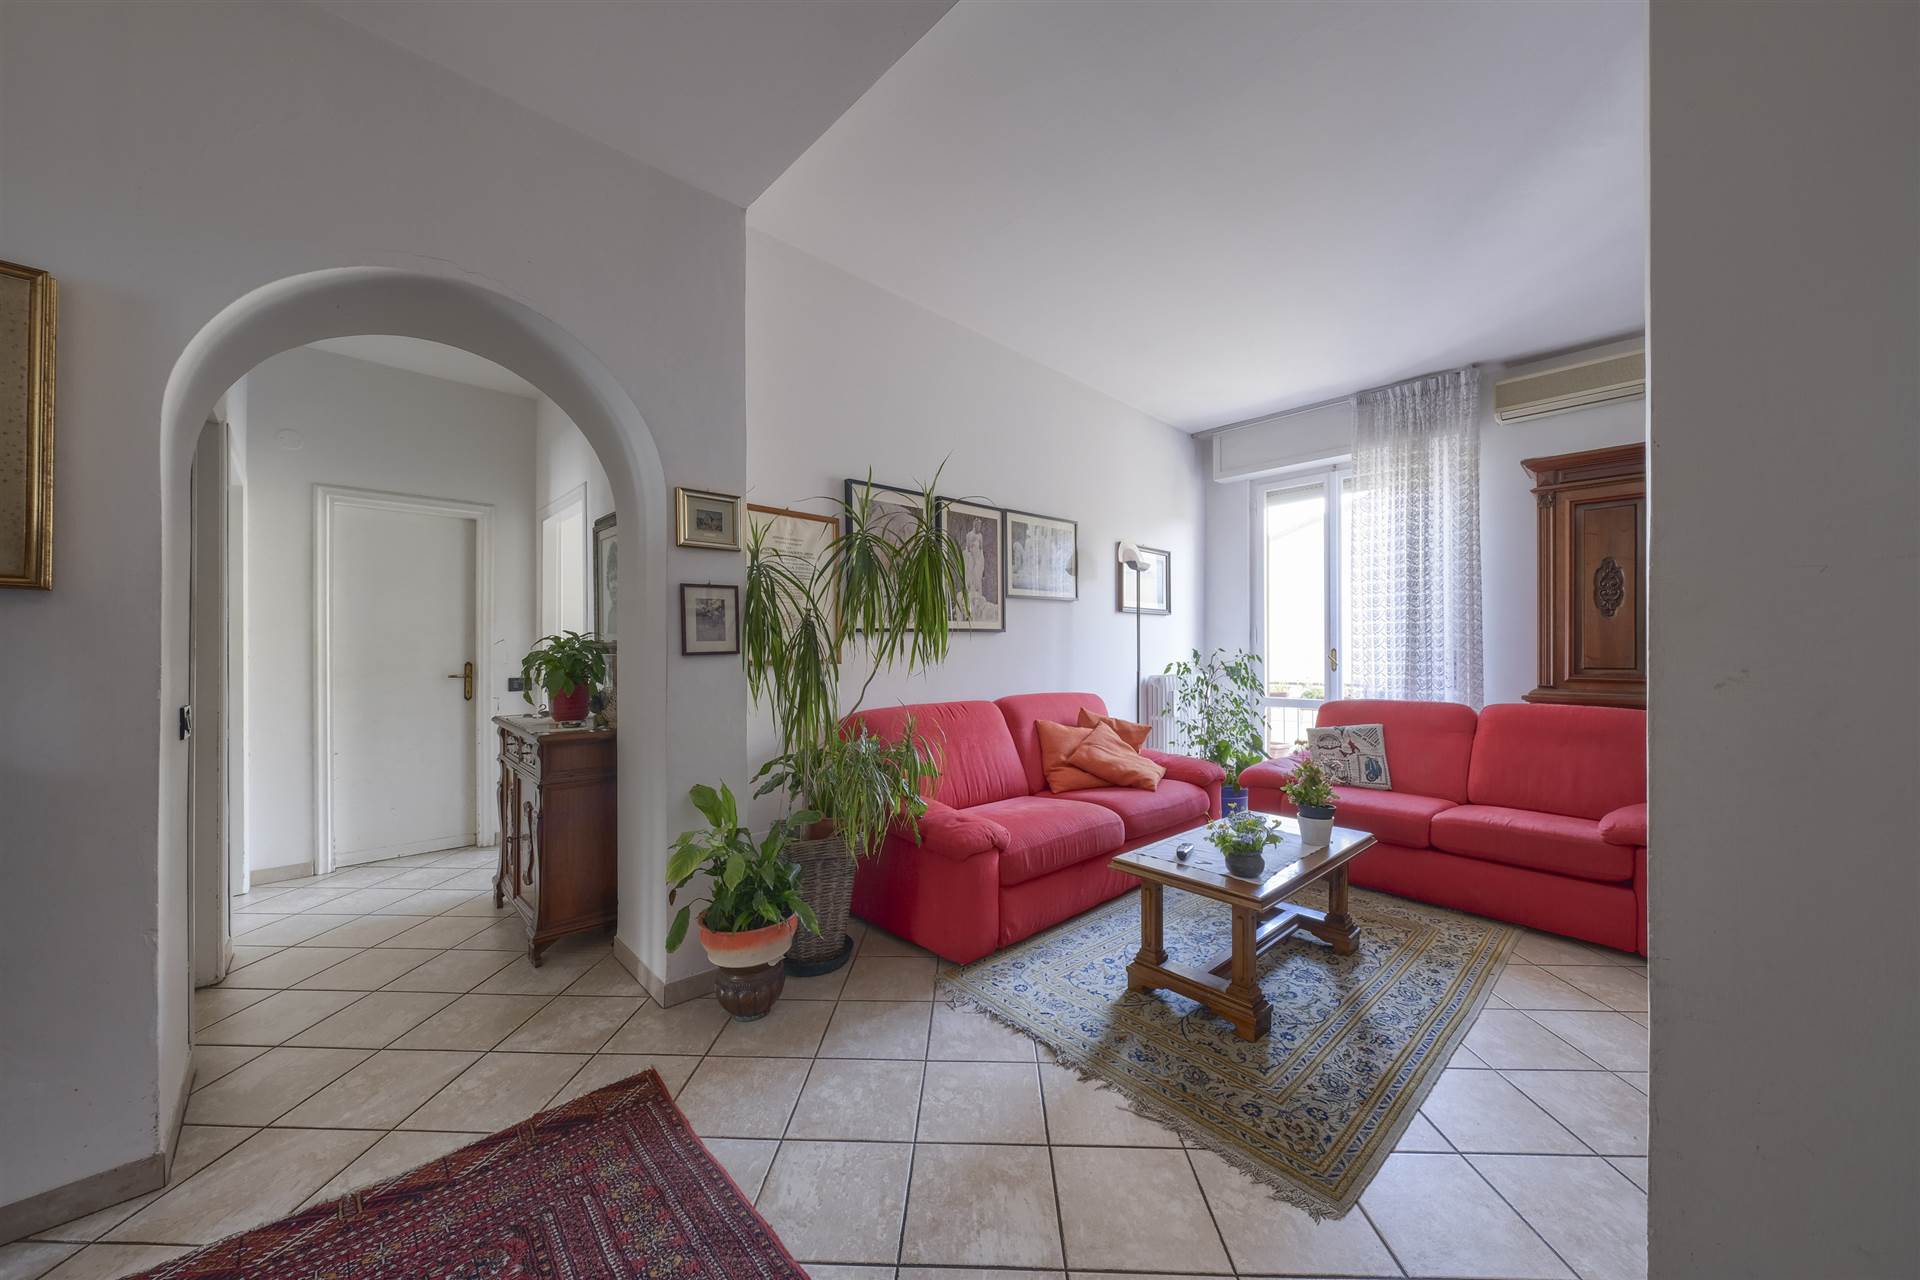 Si propone in vendita, in zona centrale residenziale di Tavarnuzze, un delizioso appartamento di 4 ampi vani con garage e cantina. L'appartamento è 